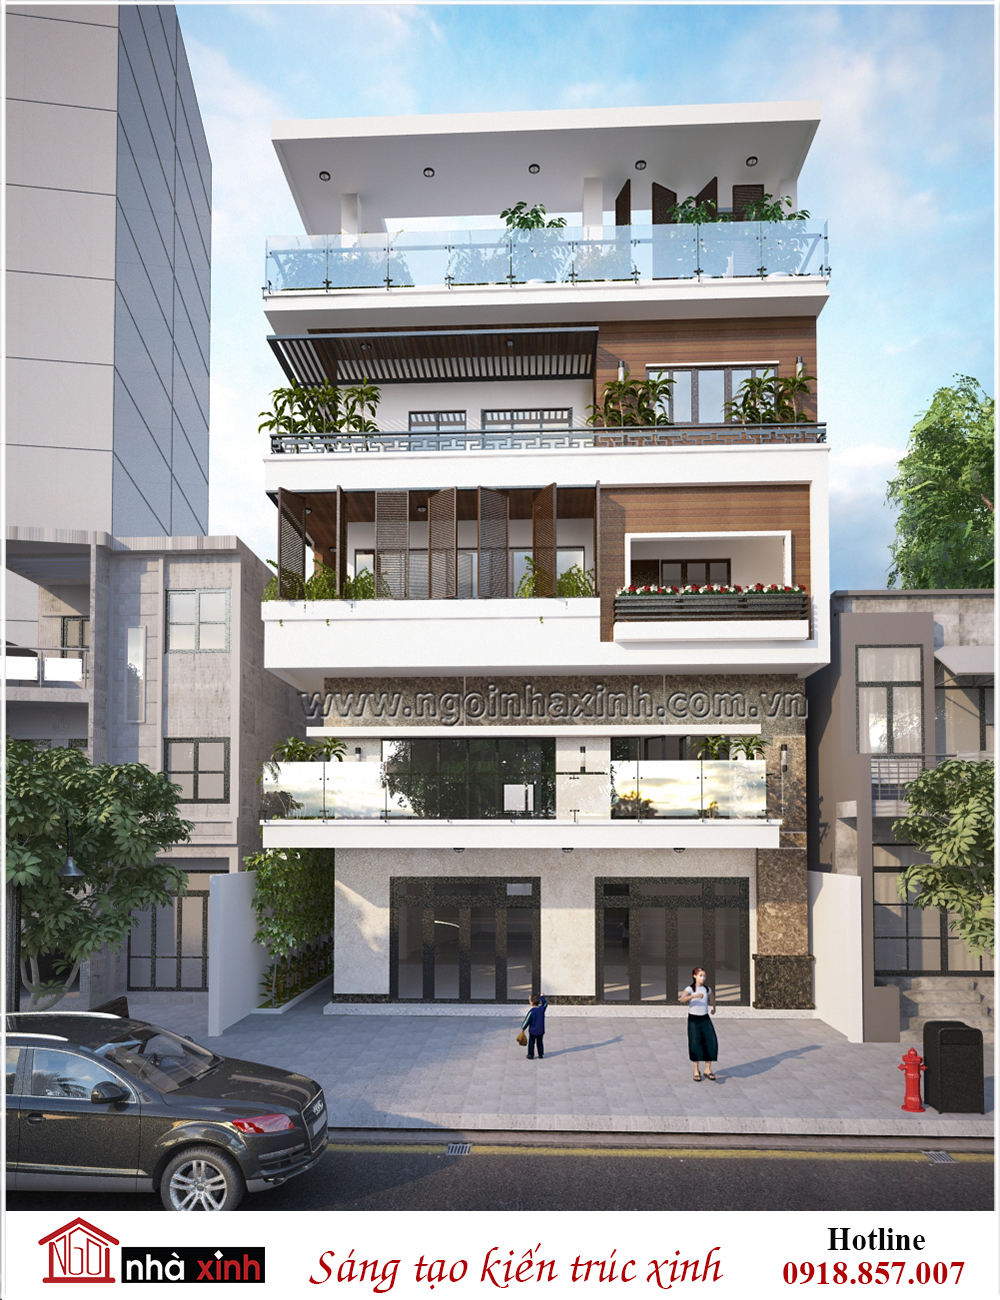 Mặt tiền mẫu thiết kế nhà phố đẹp Chị Hoa - Nguyễn Văn Luông - Hình 2